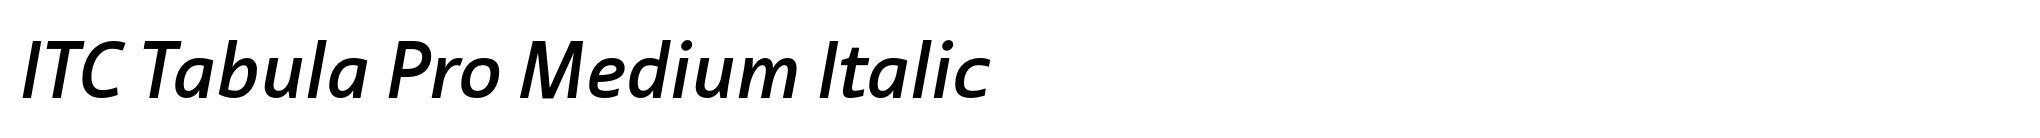 ITC Tabula Pro Medium Italic image